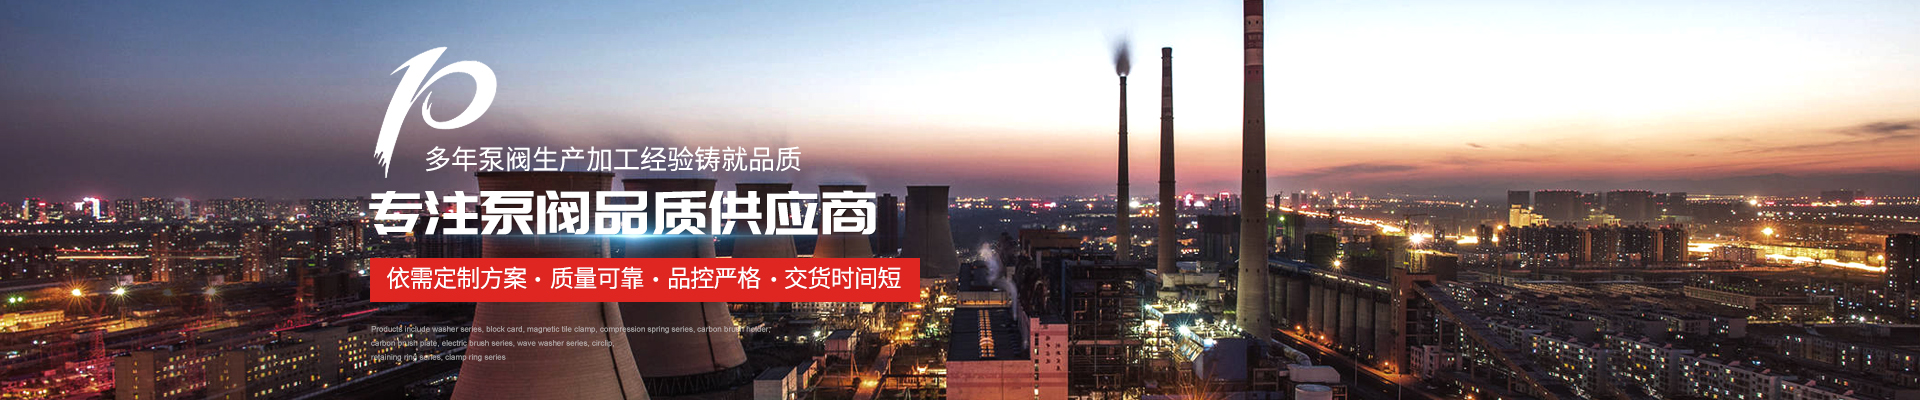 變頻恒壓供水設備廠家 - 上海高適泵閥有限公司